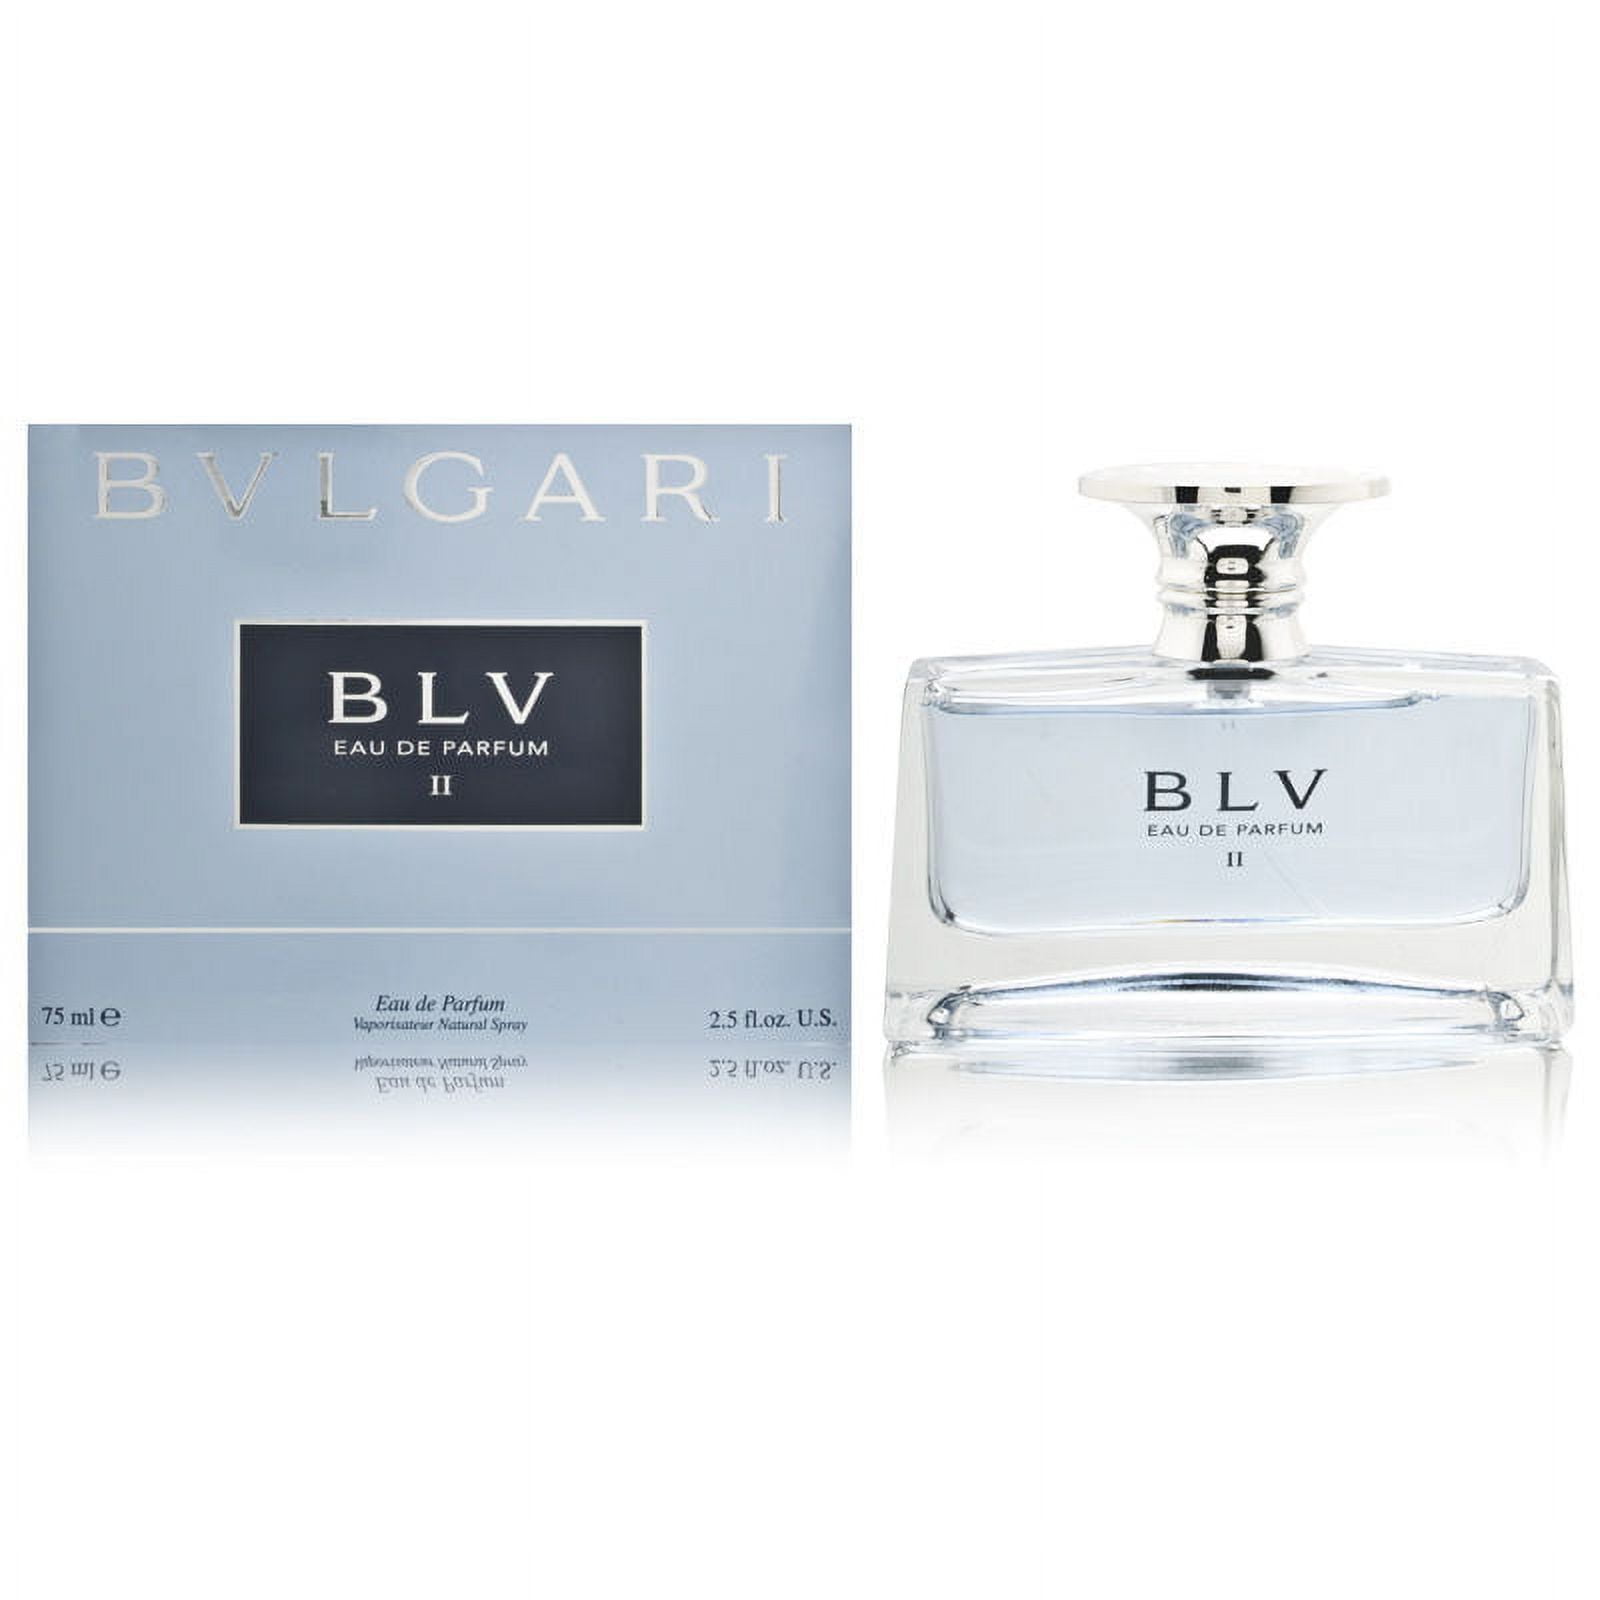 BVLGARI BLV II perfume by Bulgari – Wikiparfum